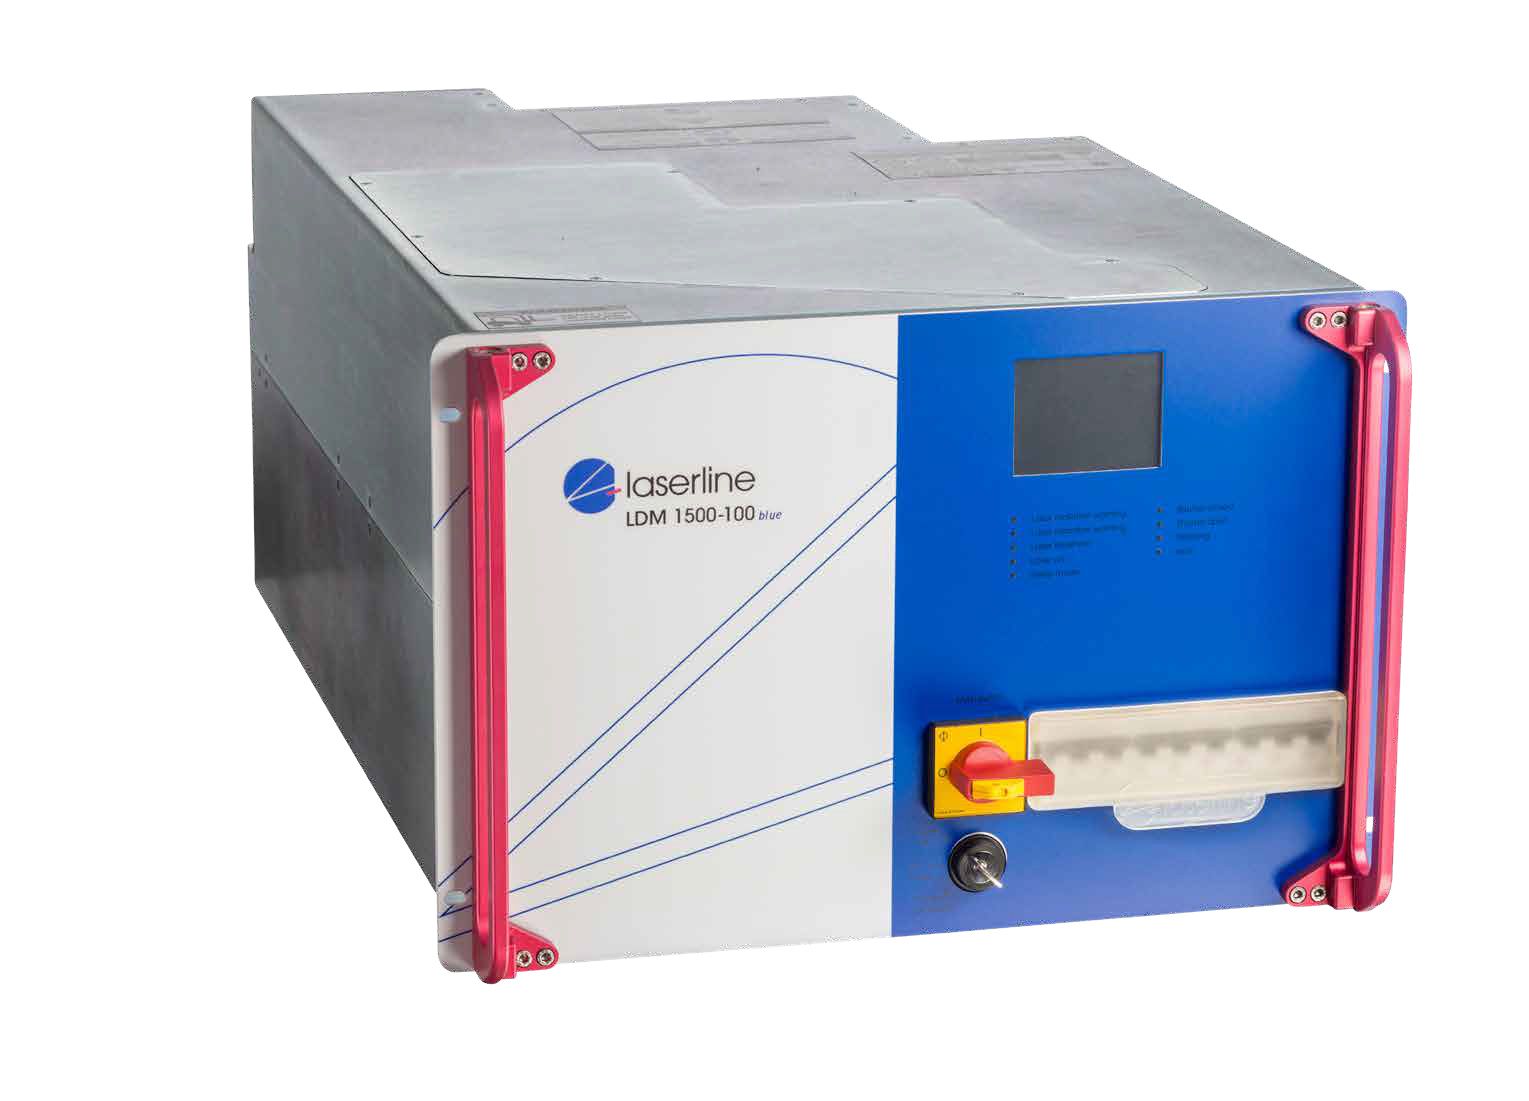 Blue diode laser LDMblue 1500-100